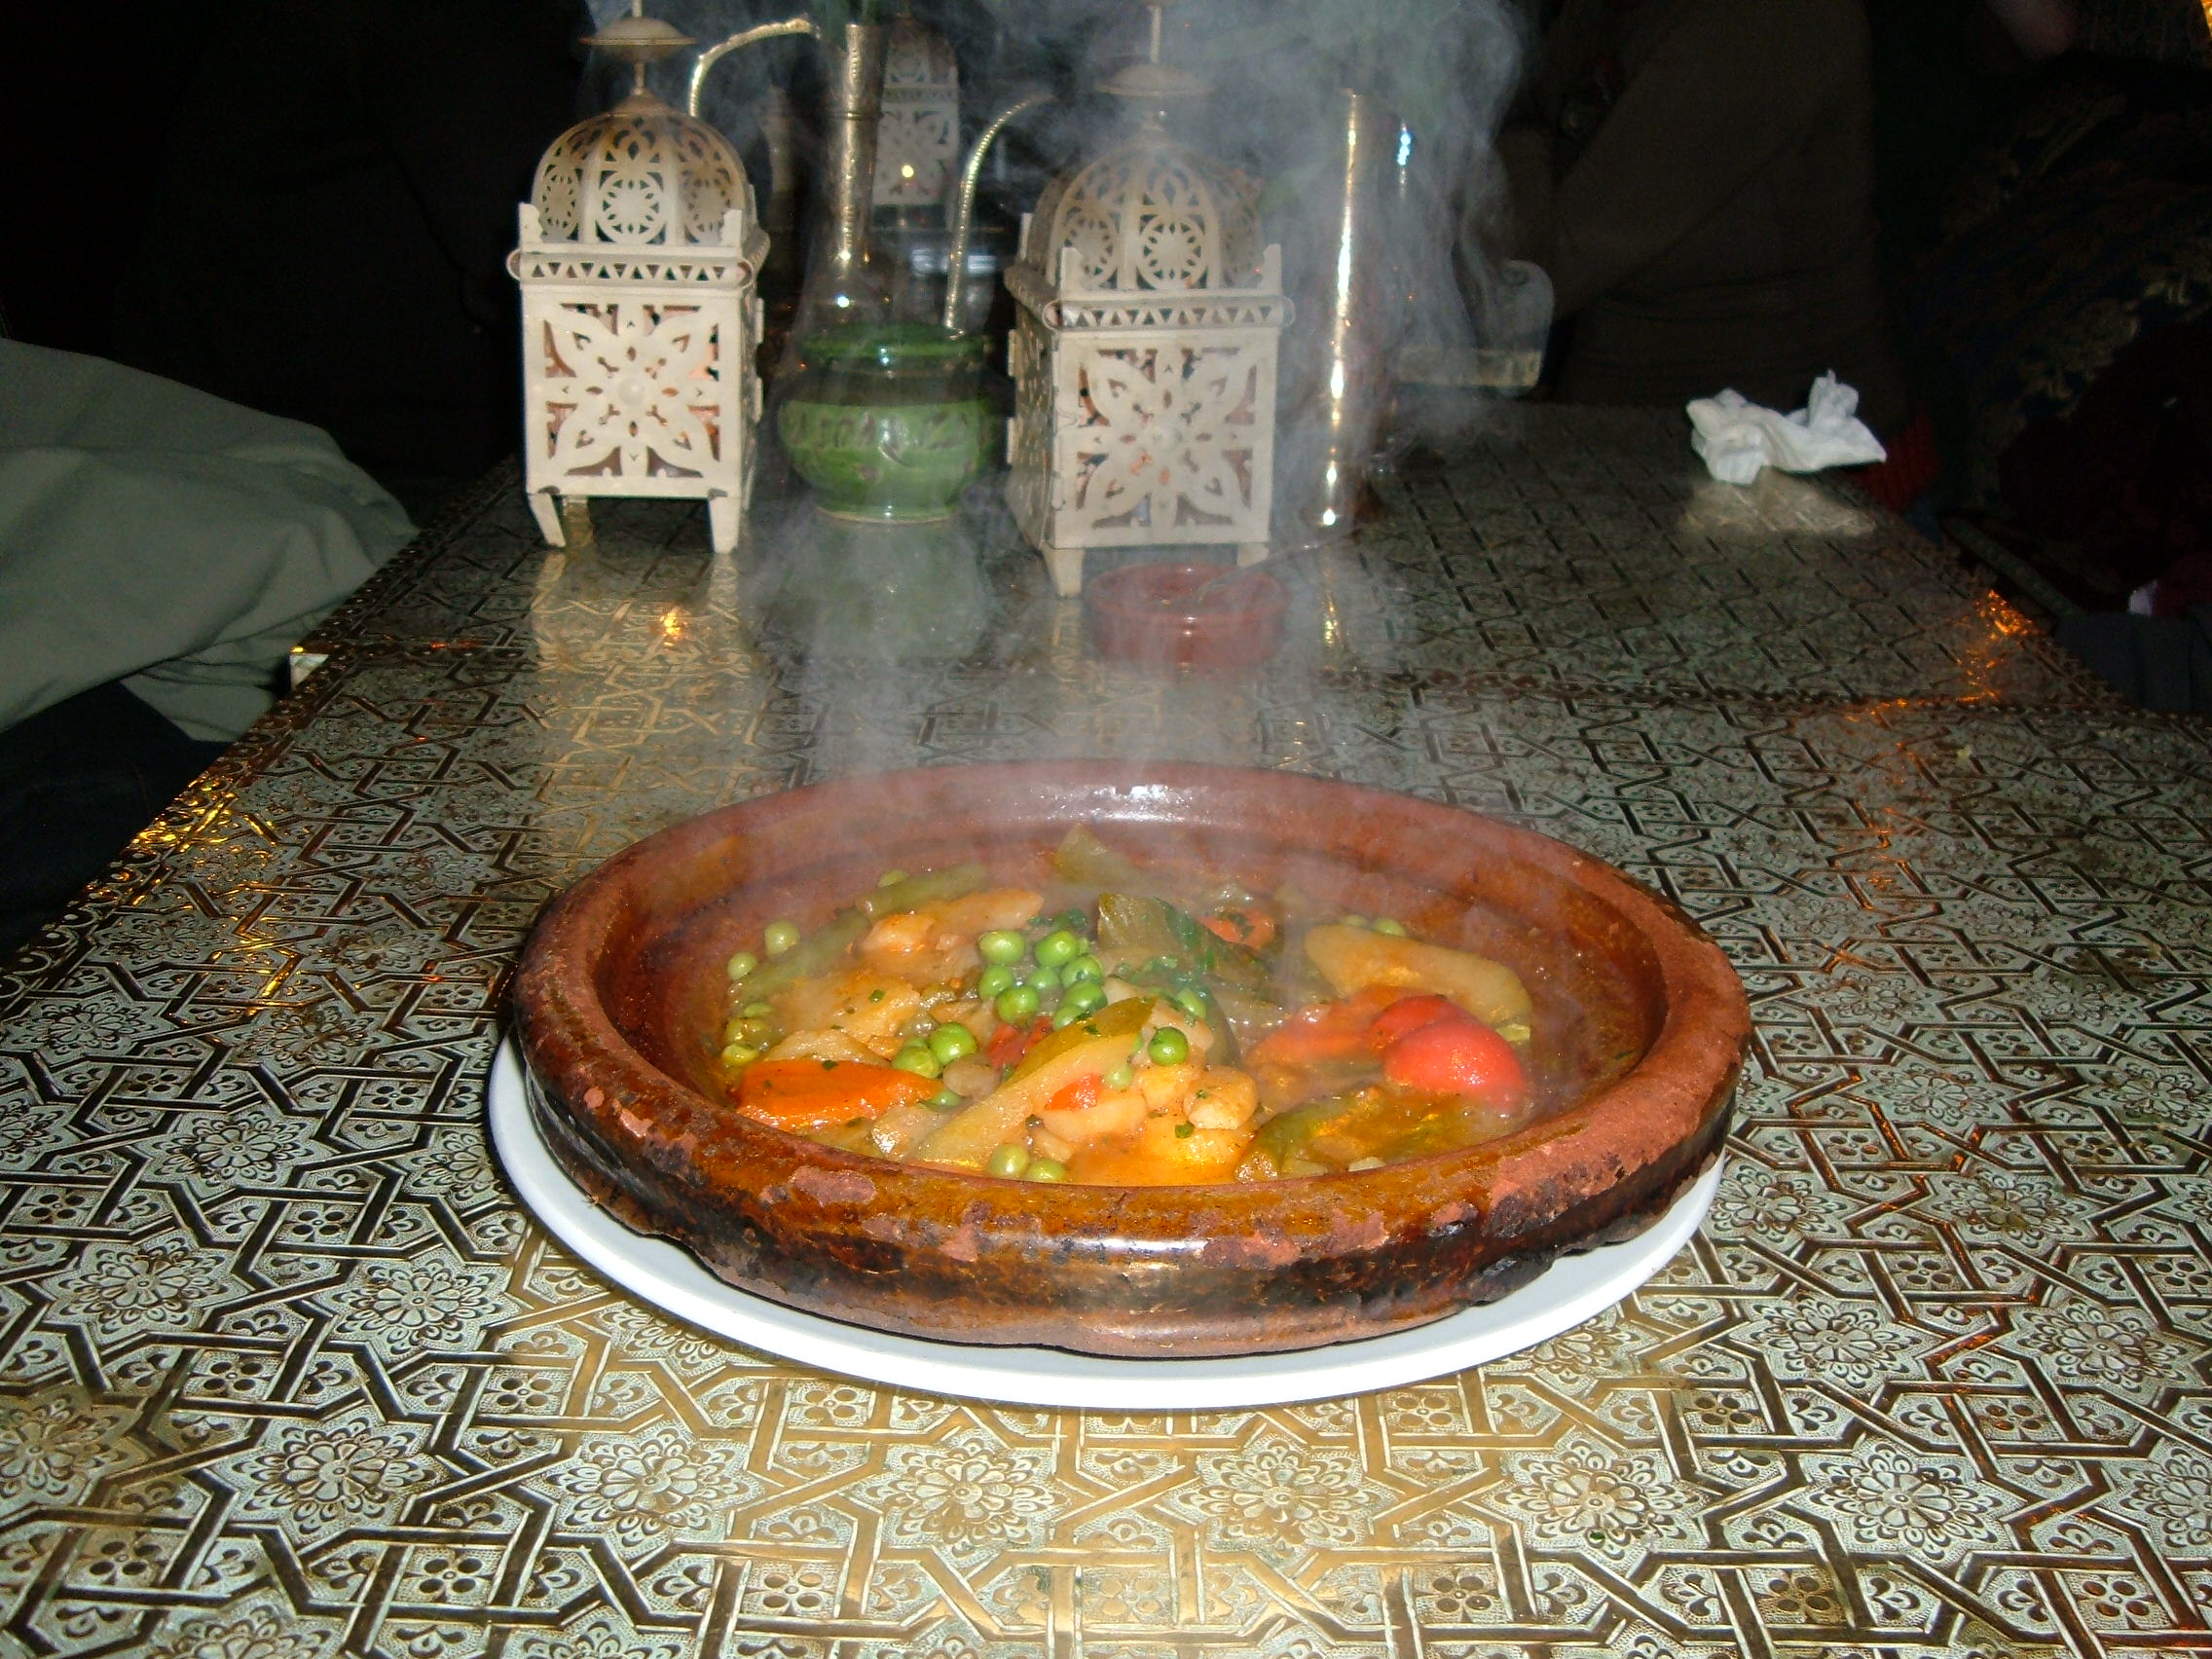 Gastronomía de Marruecos - Wikipedia, la enciclopedia libre